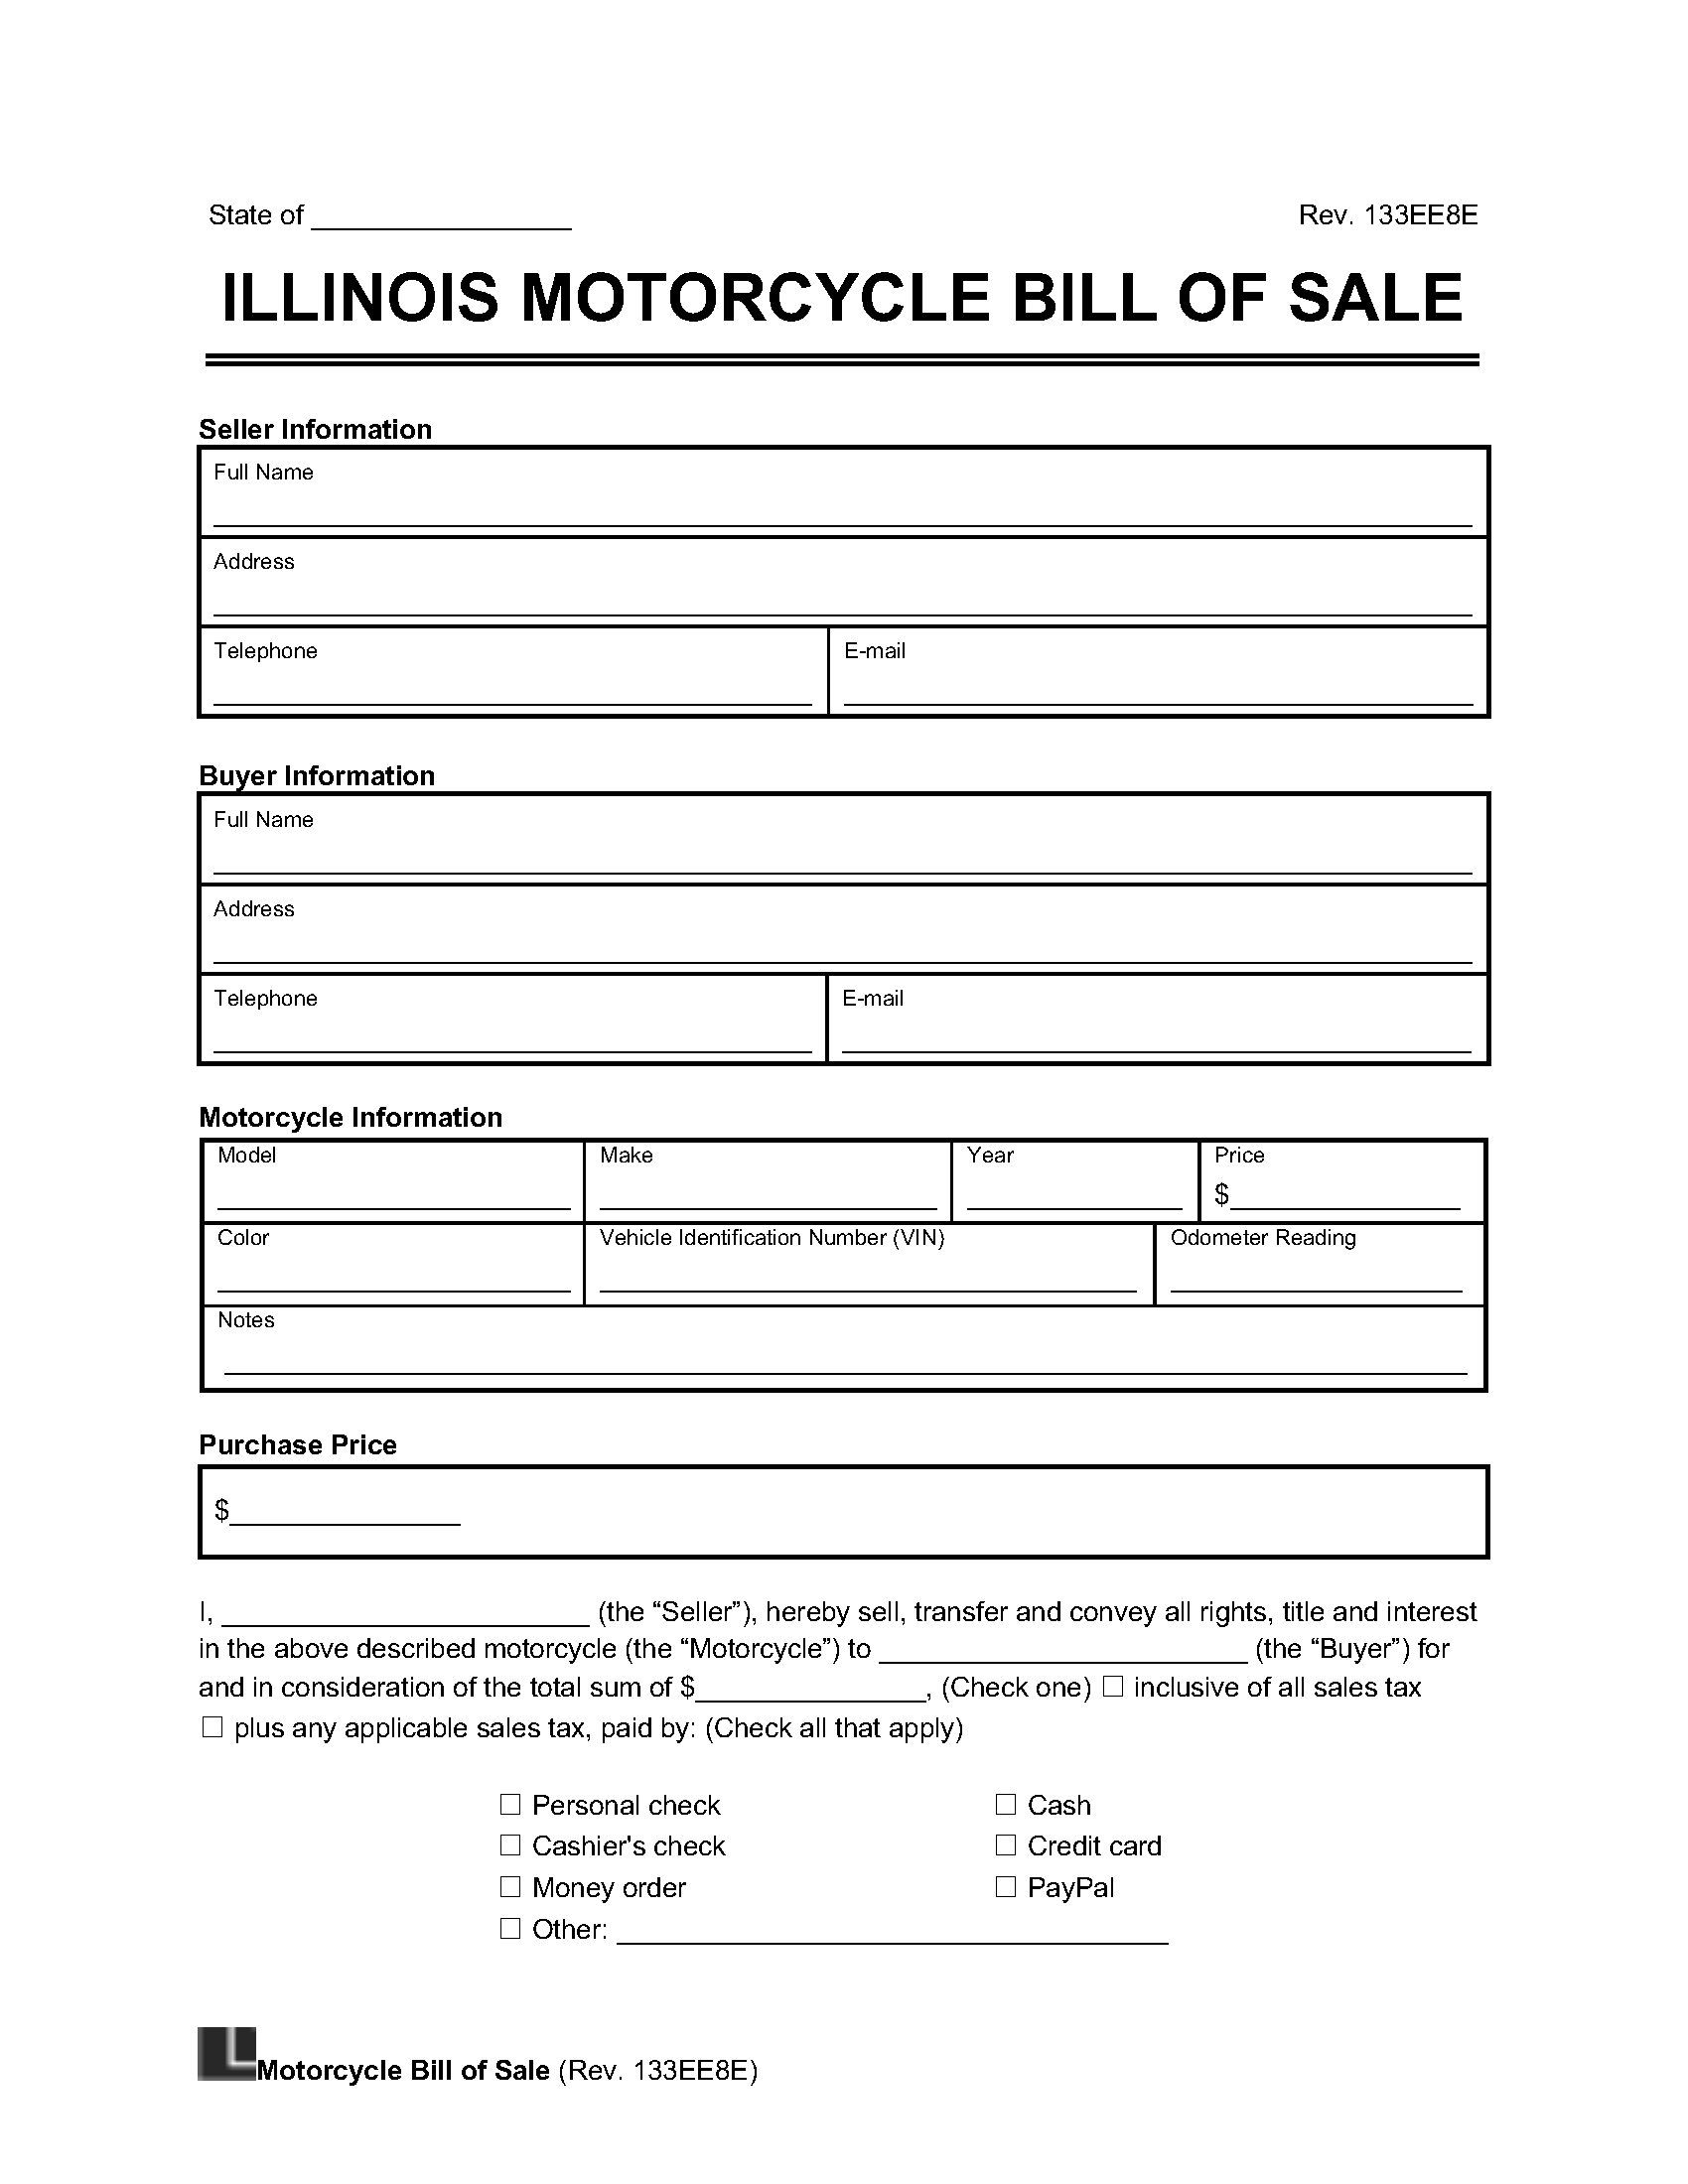 illinois motorcycle bill of sale